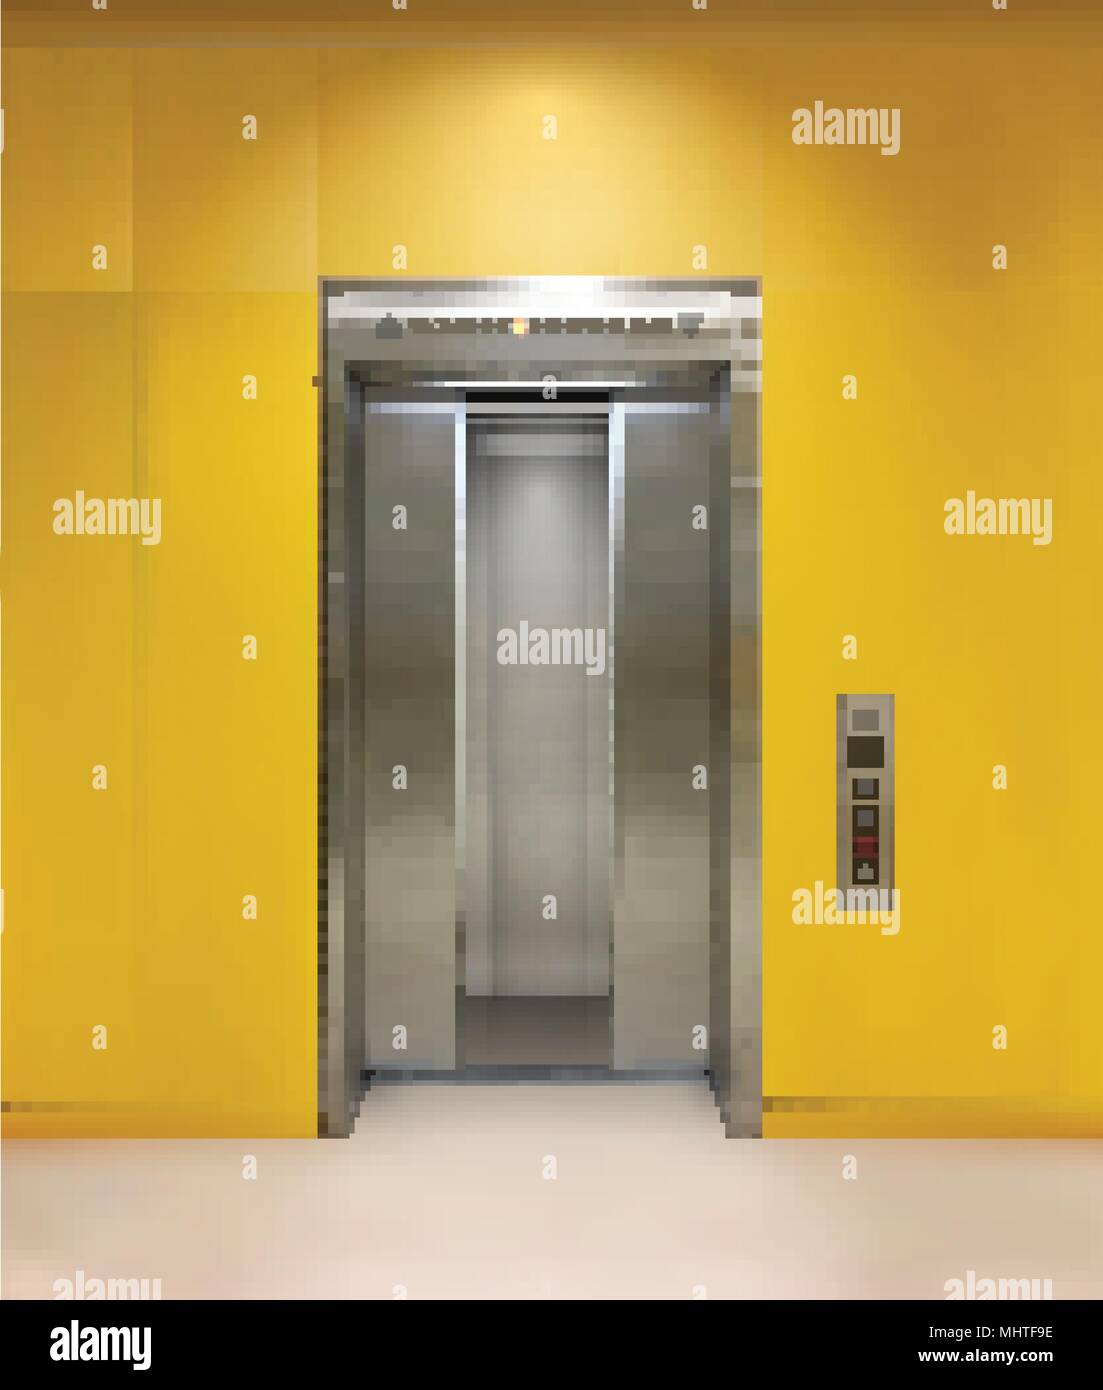 Immeuble de bureau en métal chromé porte de l'ascenseur. La variante ouverte et fermée. Vector illustration réaliste de mur jaune ascenseur immeuble de bureaux. Illustration de Vecteur